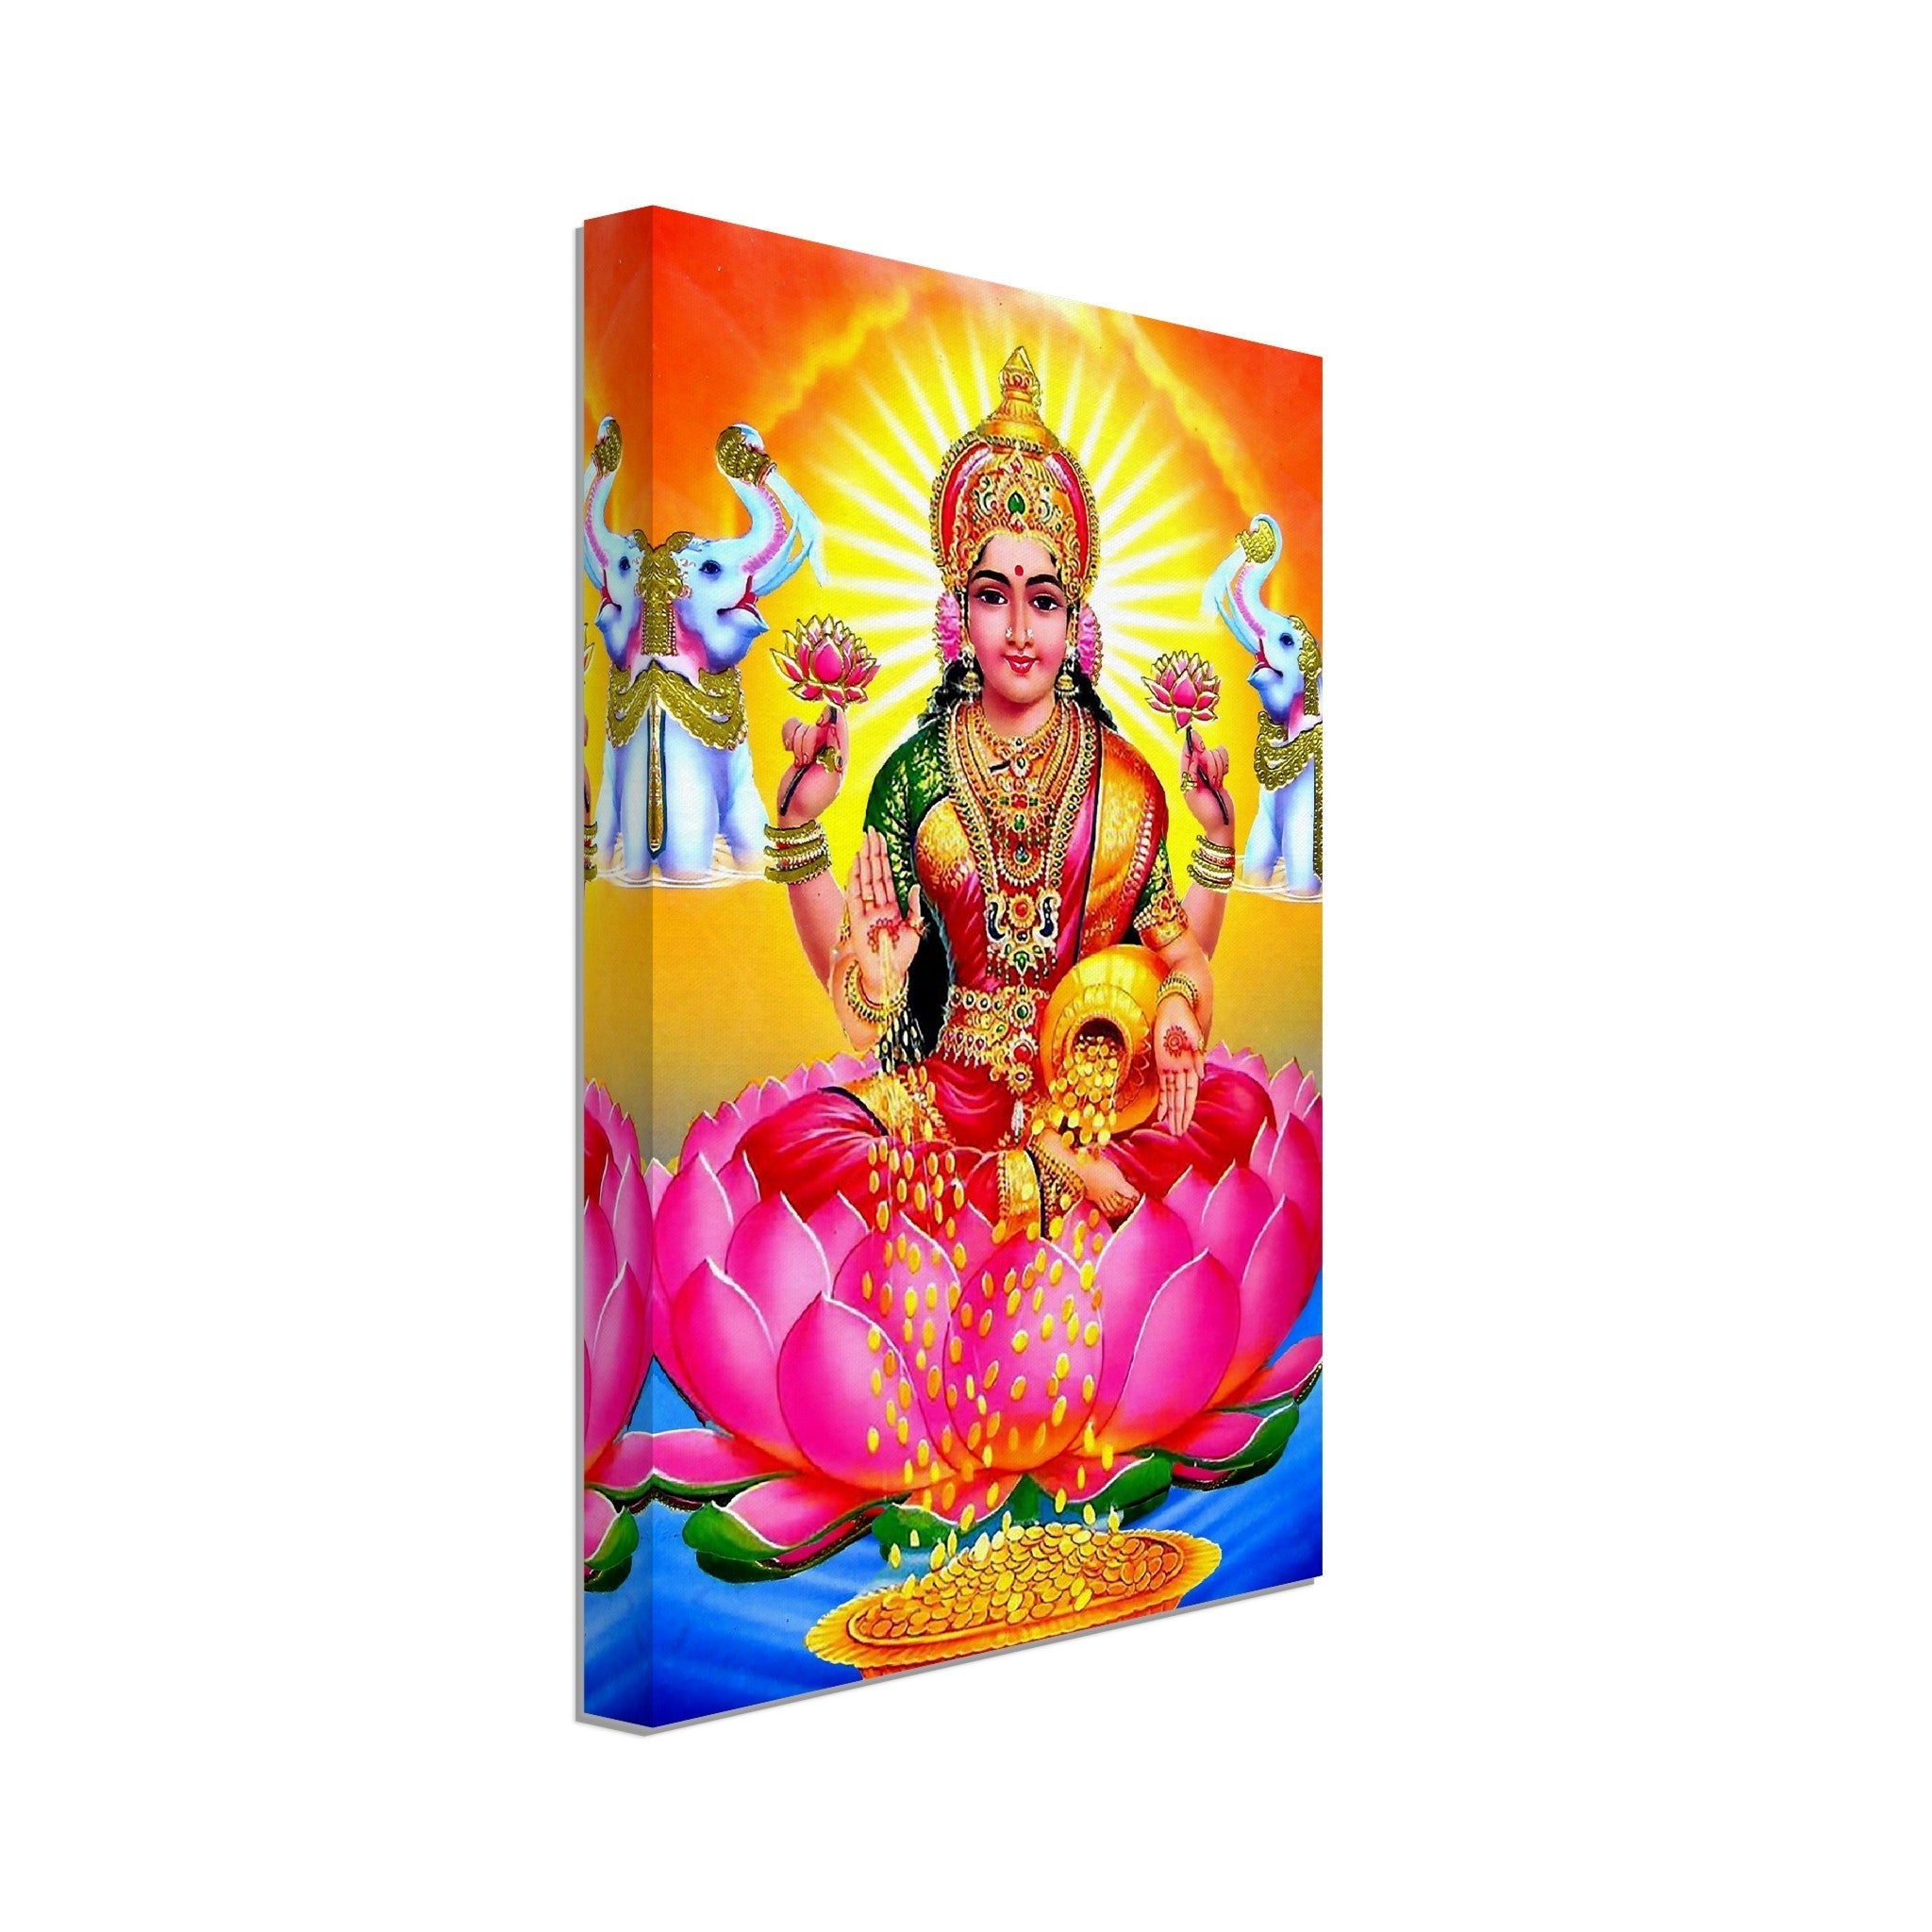 Lakshmi Canvas, Hindu Goddess Of Wealth Prosperity - Laksmi Canvas Print - WallArtPrints4U